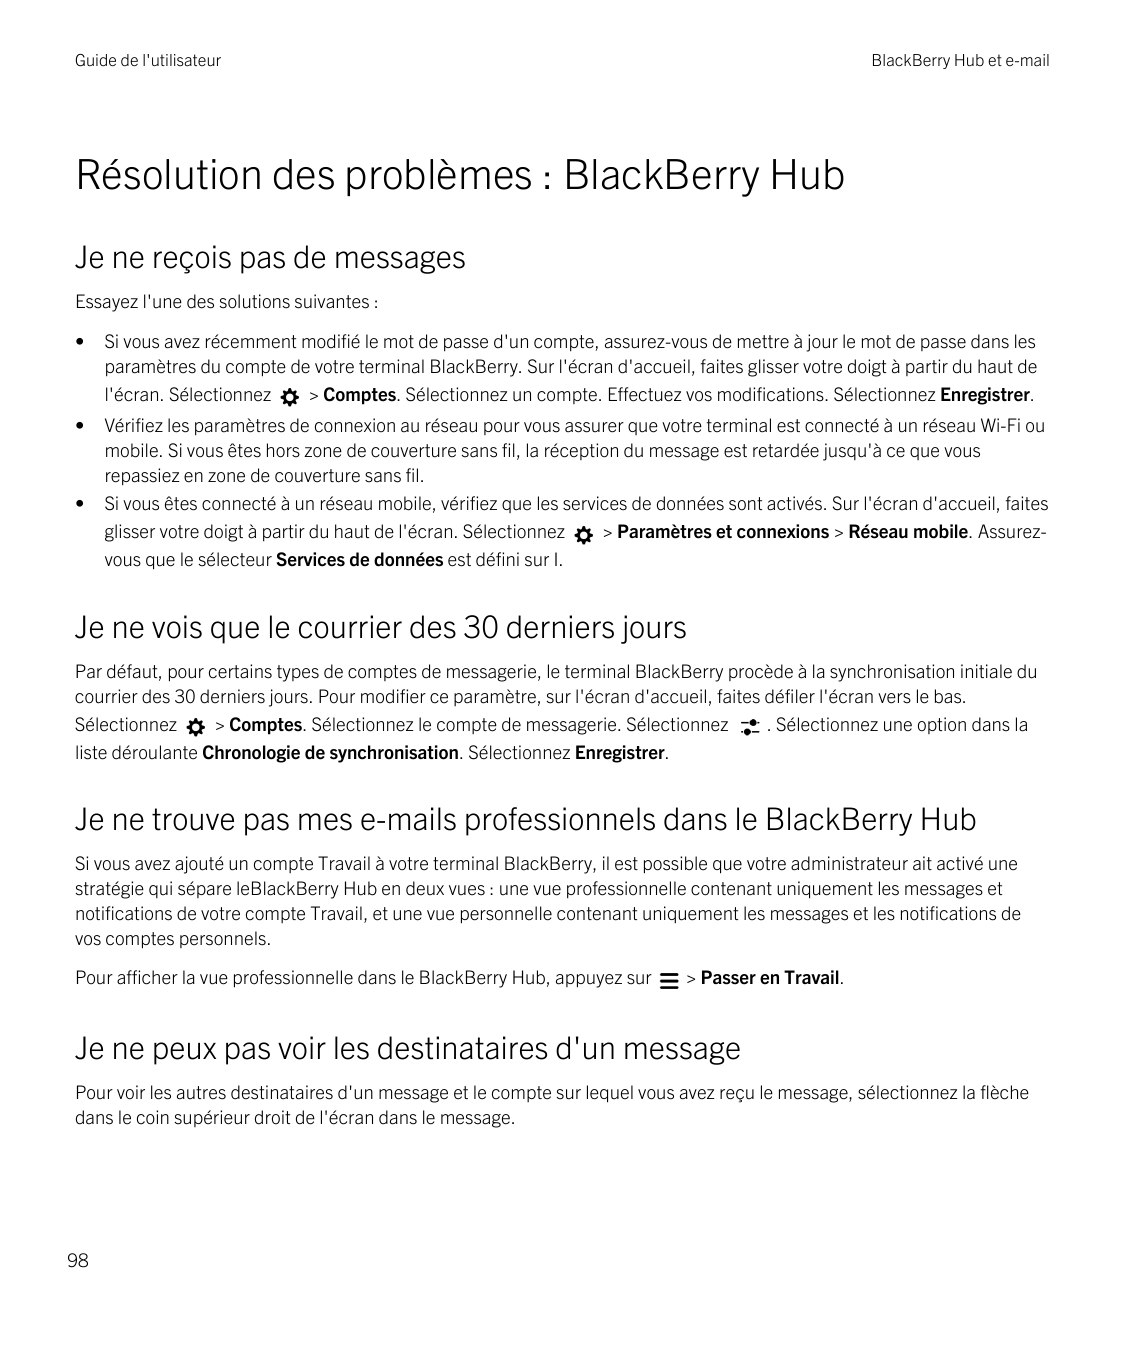 Guide de l'utilisateurBlackBerry Hub et e-mailRésolution des problèmes : BlackBerry HubJe ne reçois pas de messagesEssayez l'une